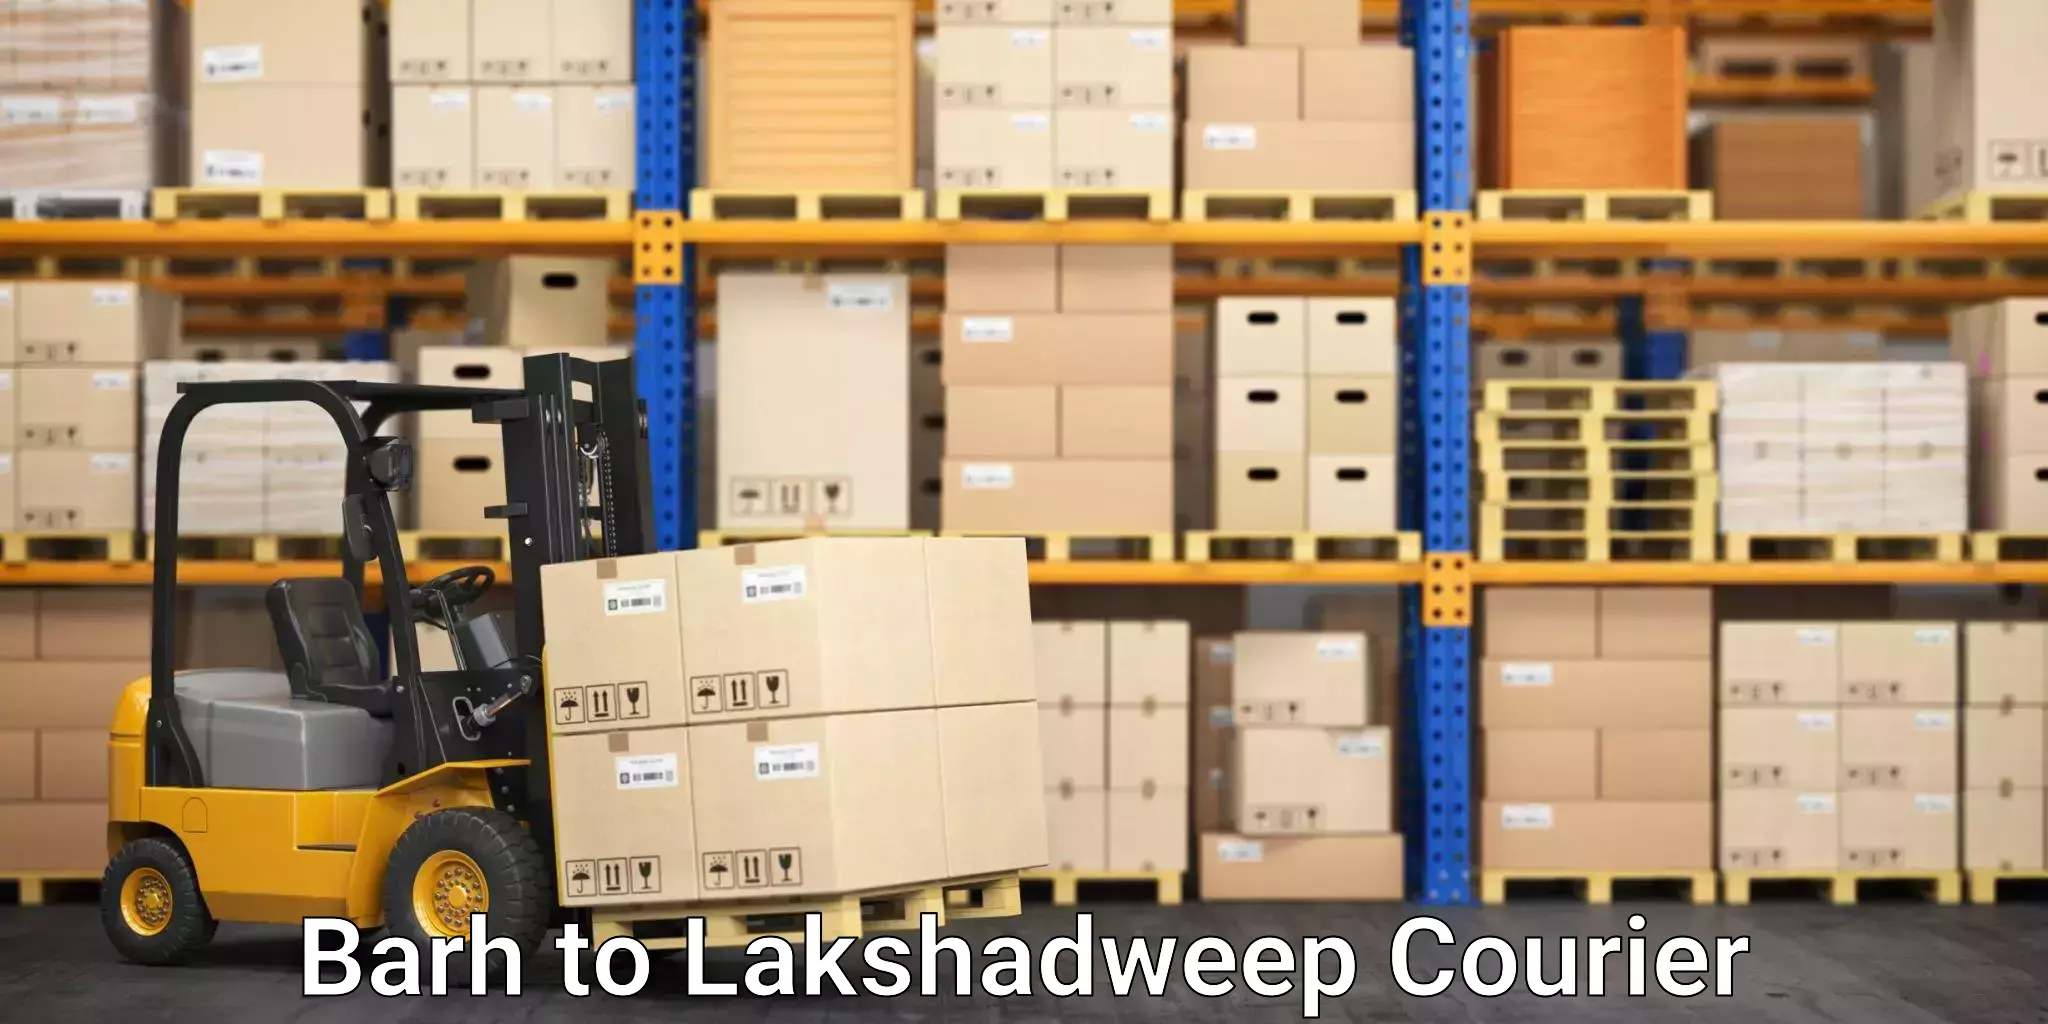 Furniture transport experts Barh to Lakshadweep